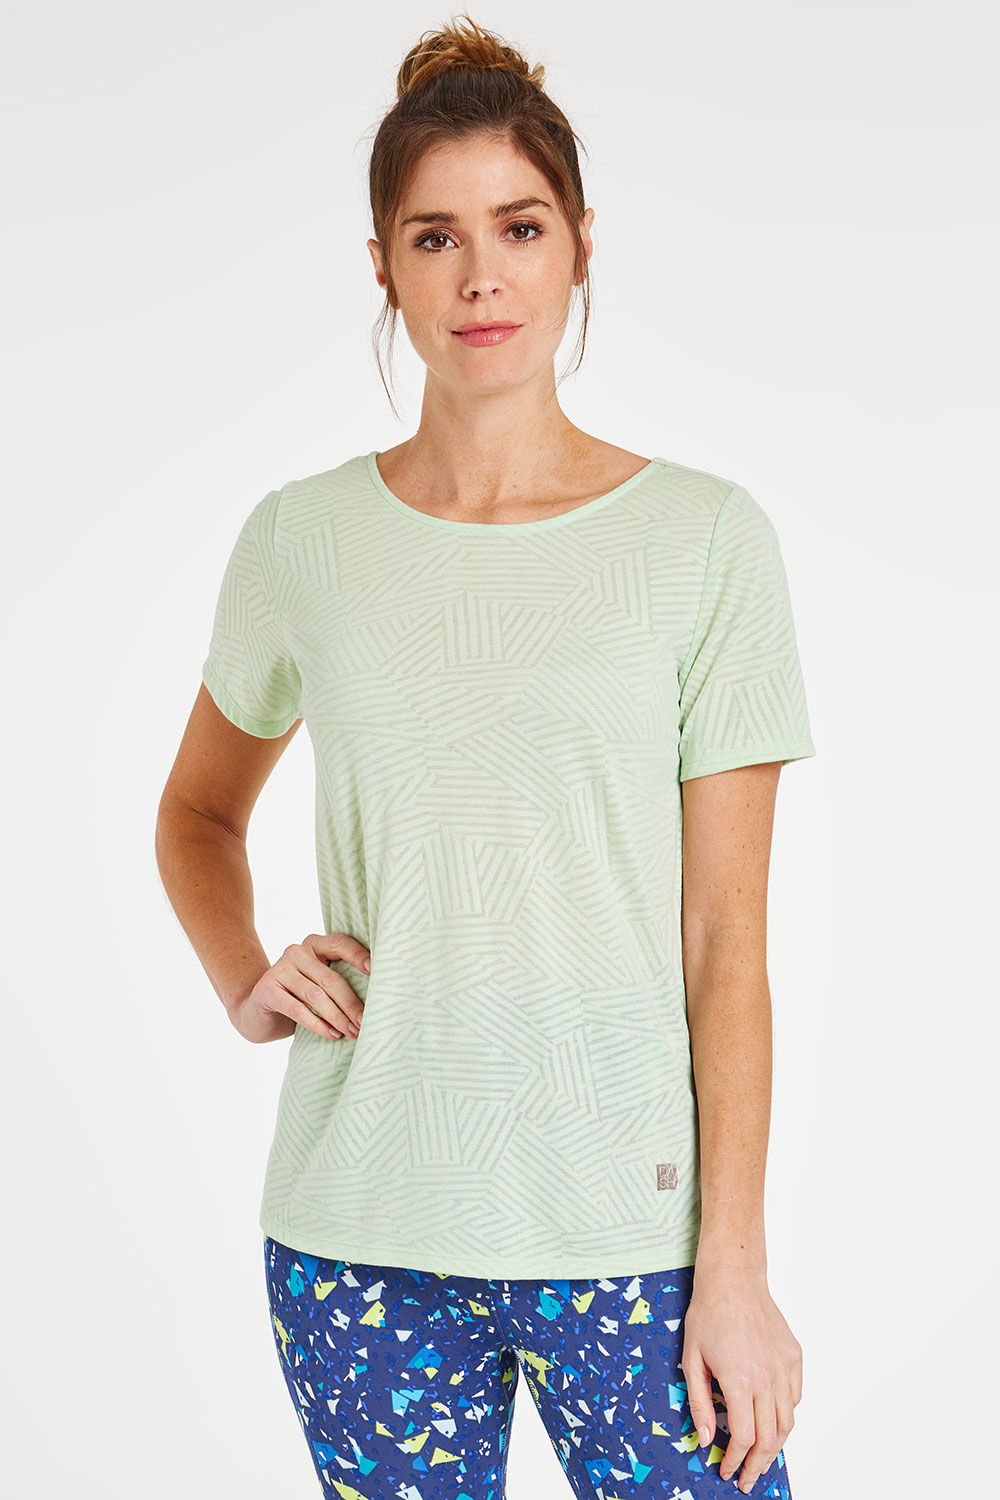 DASH Women’s Light Green Short Sleeve Burnout Print Criss Cross Back T-Shirt, Size: 26